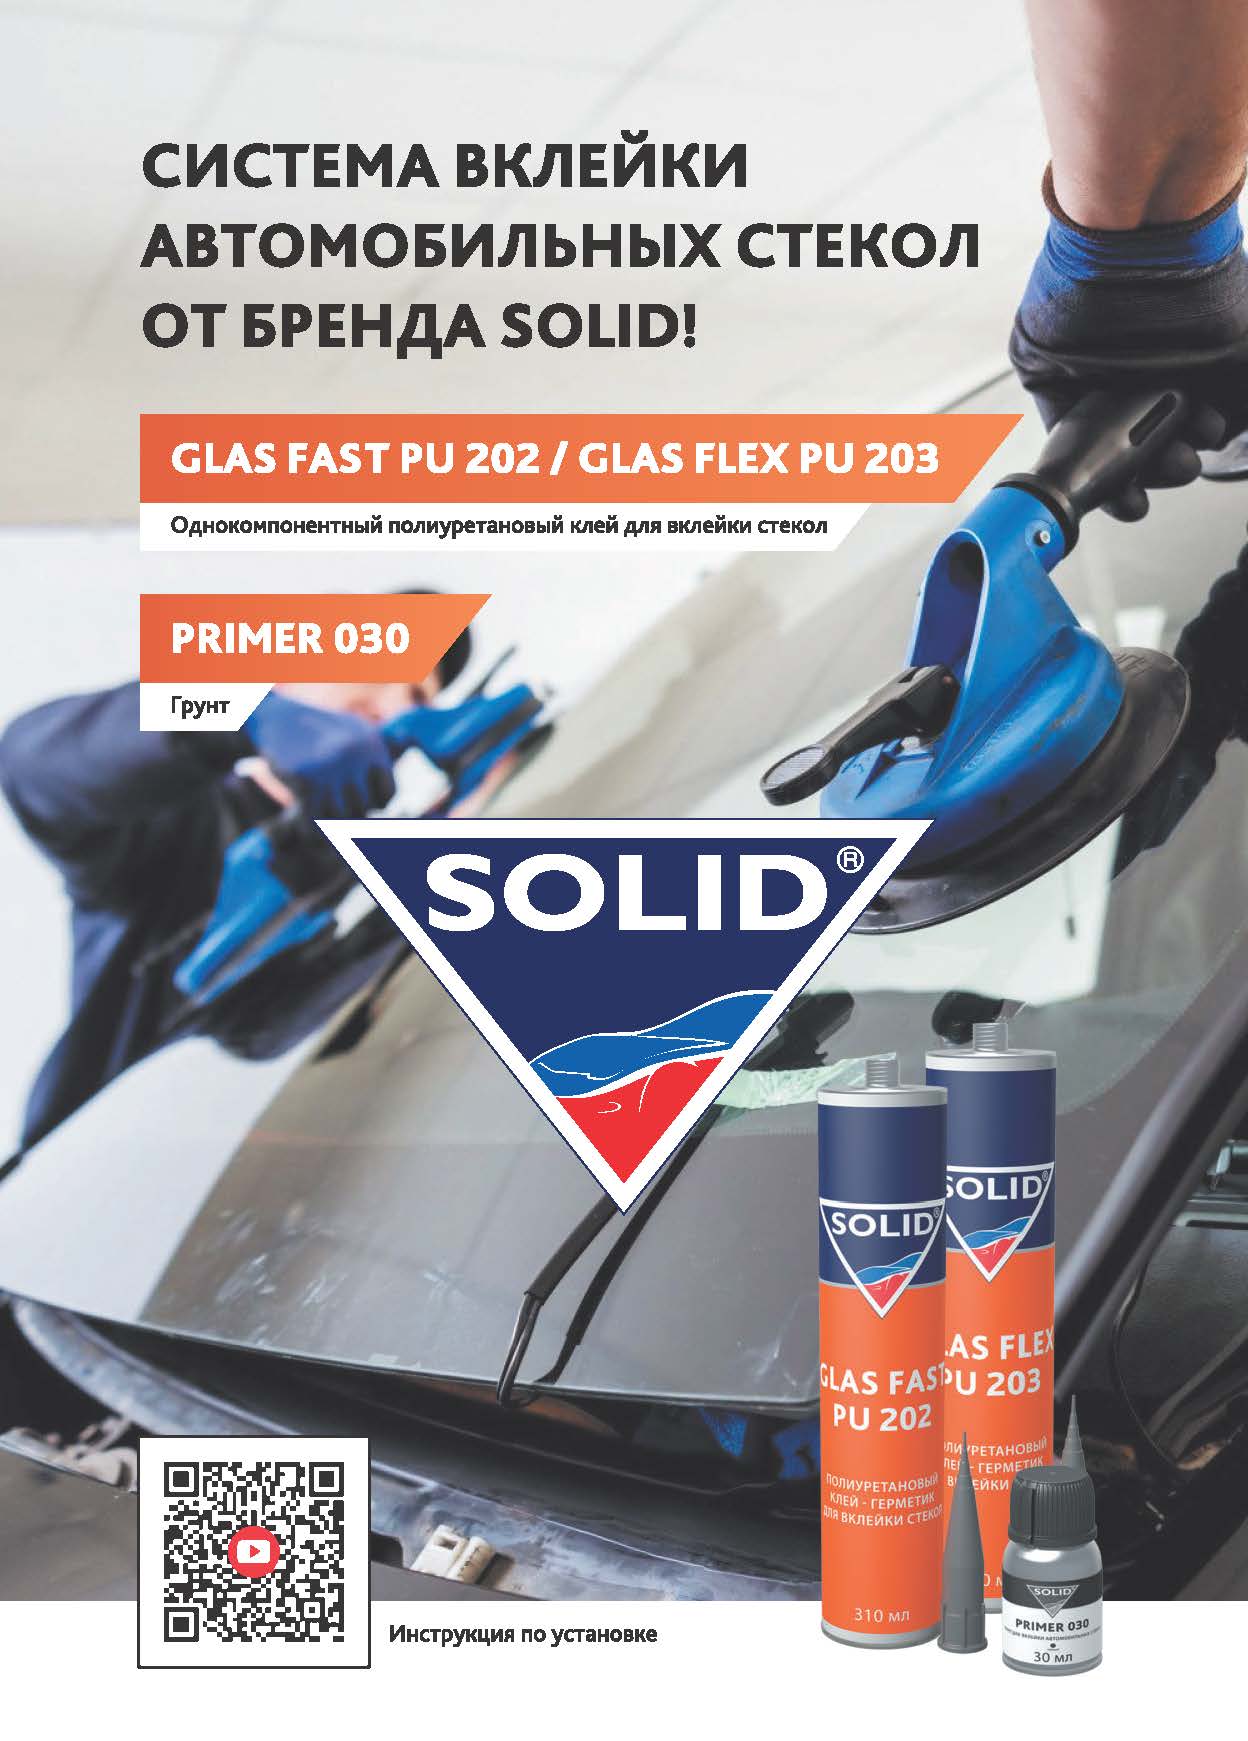 Система вклейки автомобильных стекол от бренда SOLID!